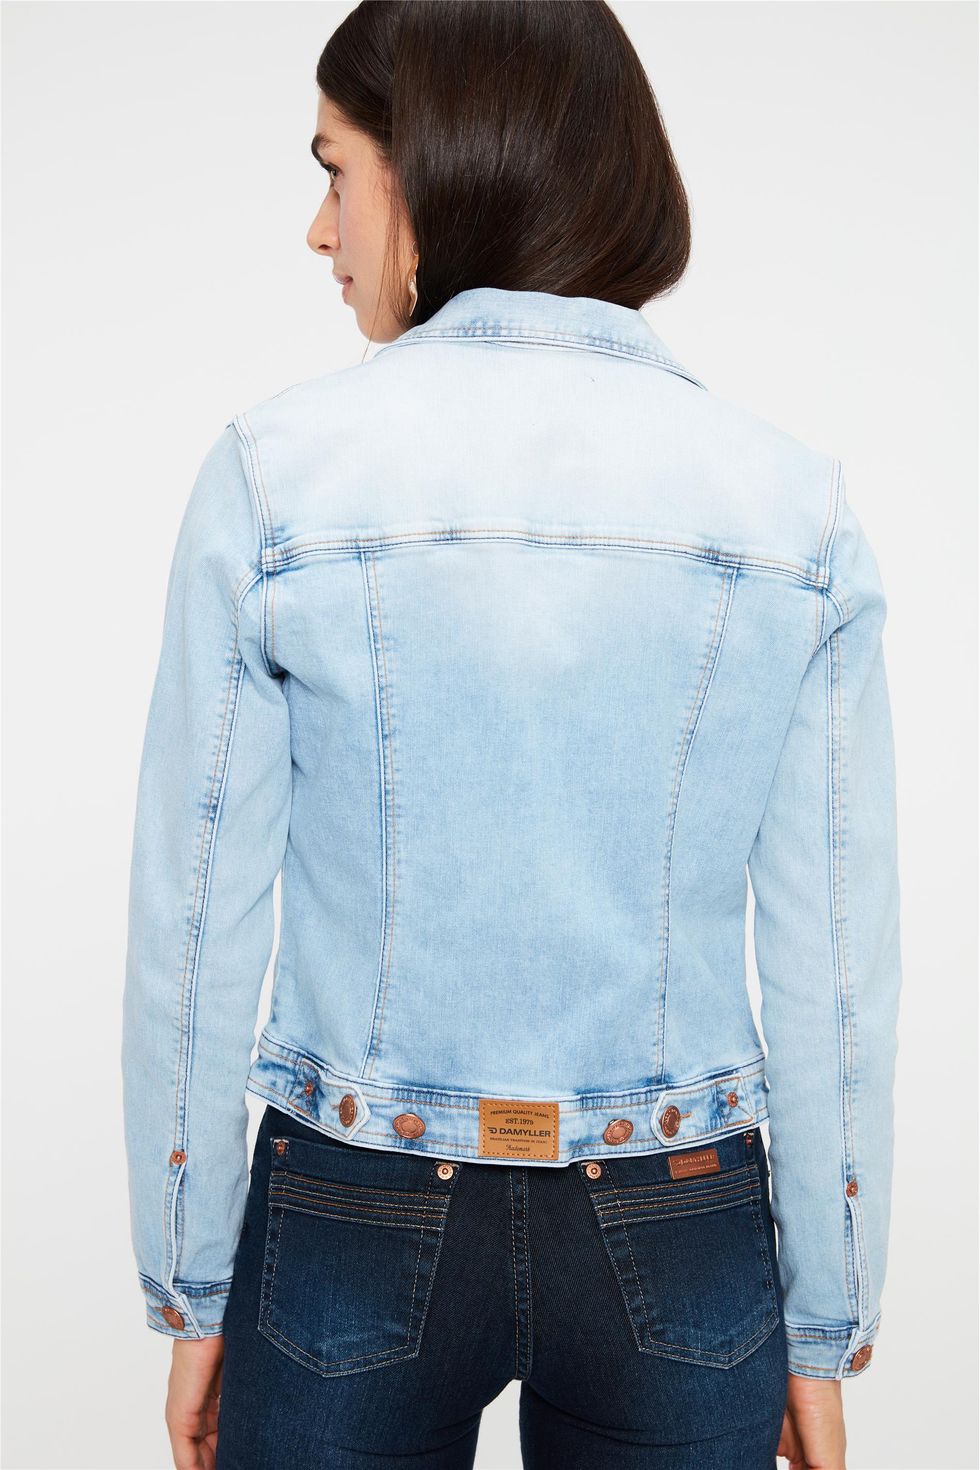 jaqueta jeans com estampa nas costas